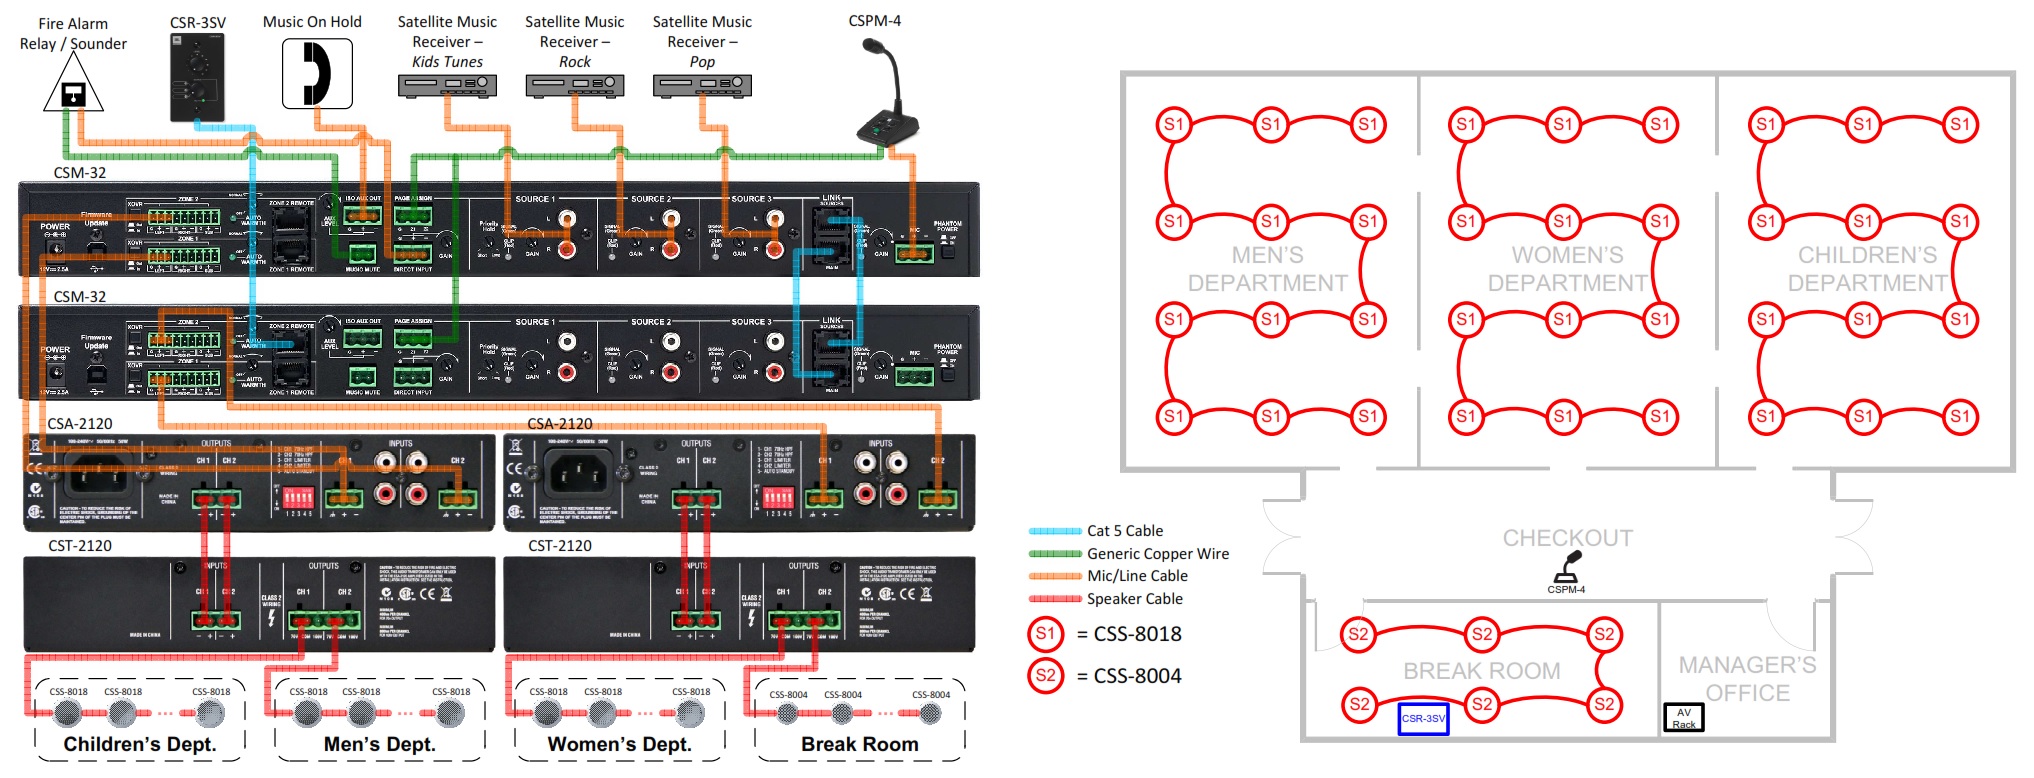 Схема организации аудиосистемы на базе JBL CSM-21 в супермаркете